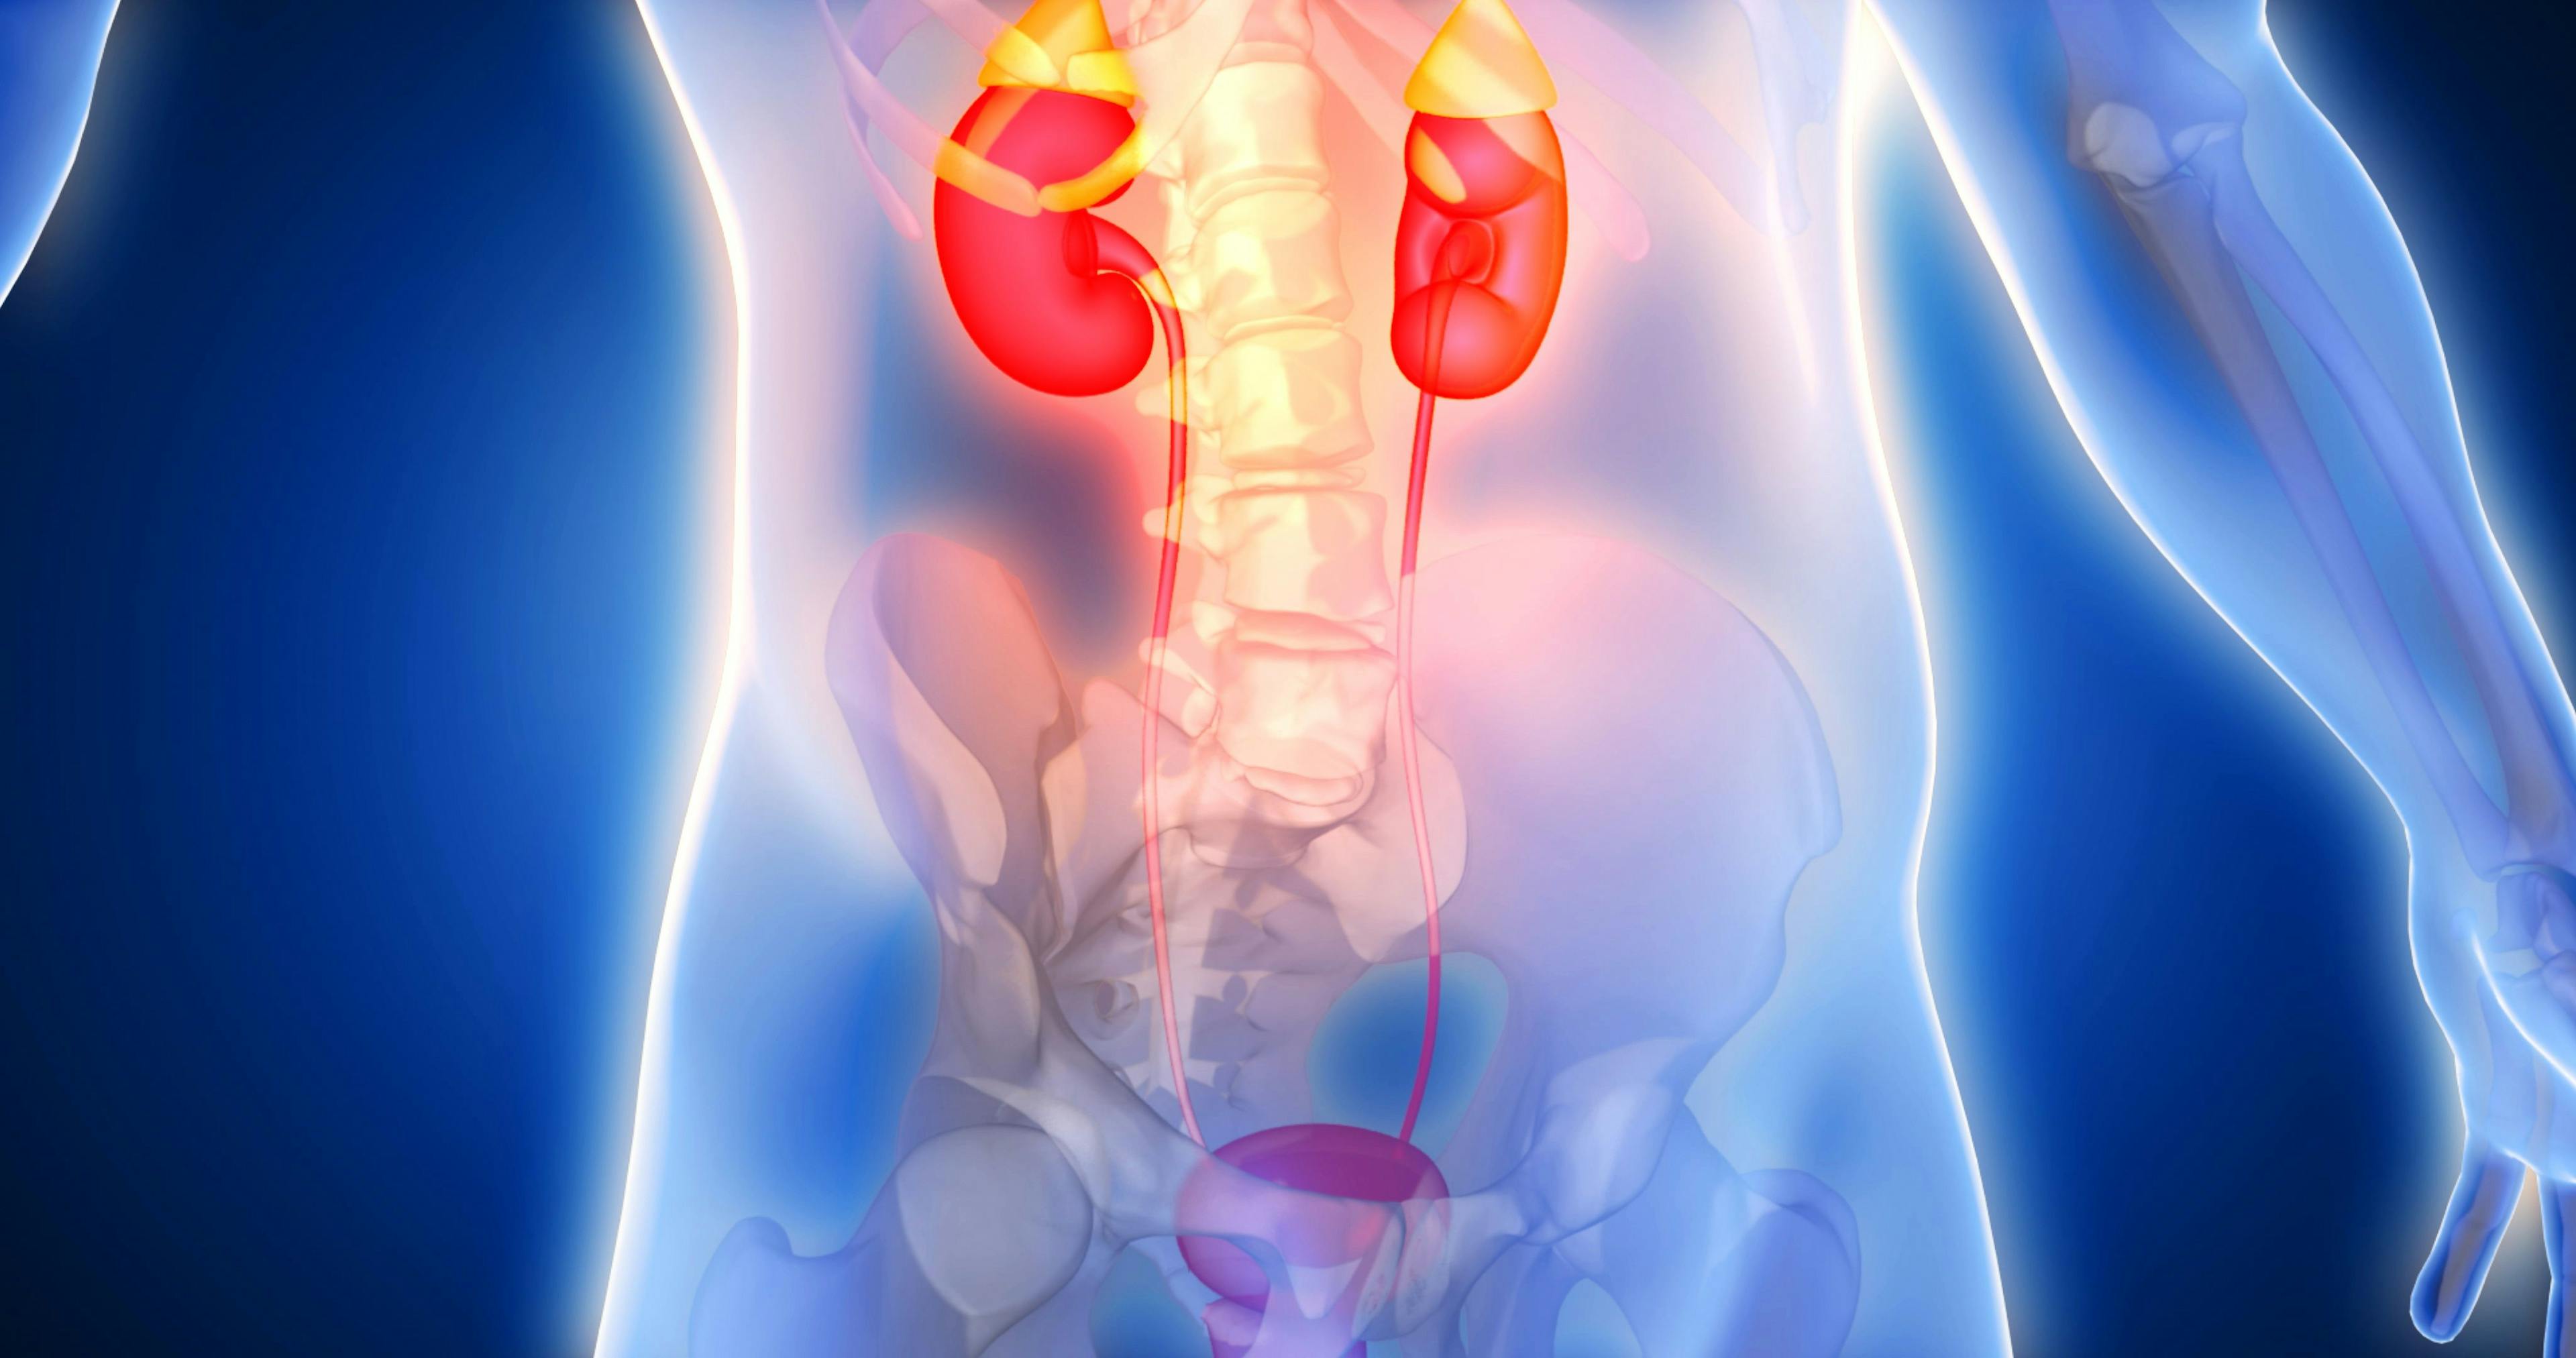 Kidneys, adrenal glands, genitourinary system: © Leo Viktorov - stock.adobe.com